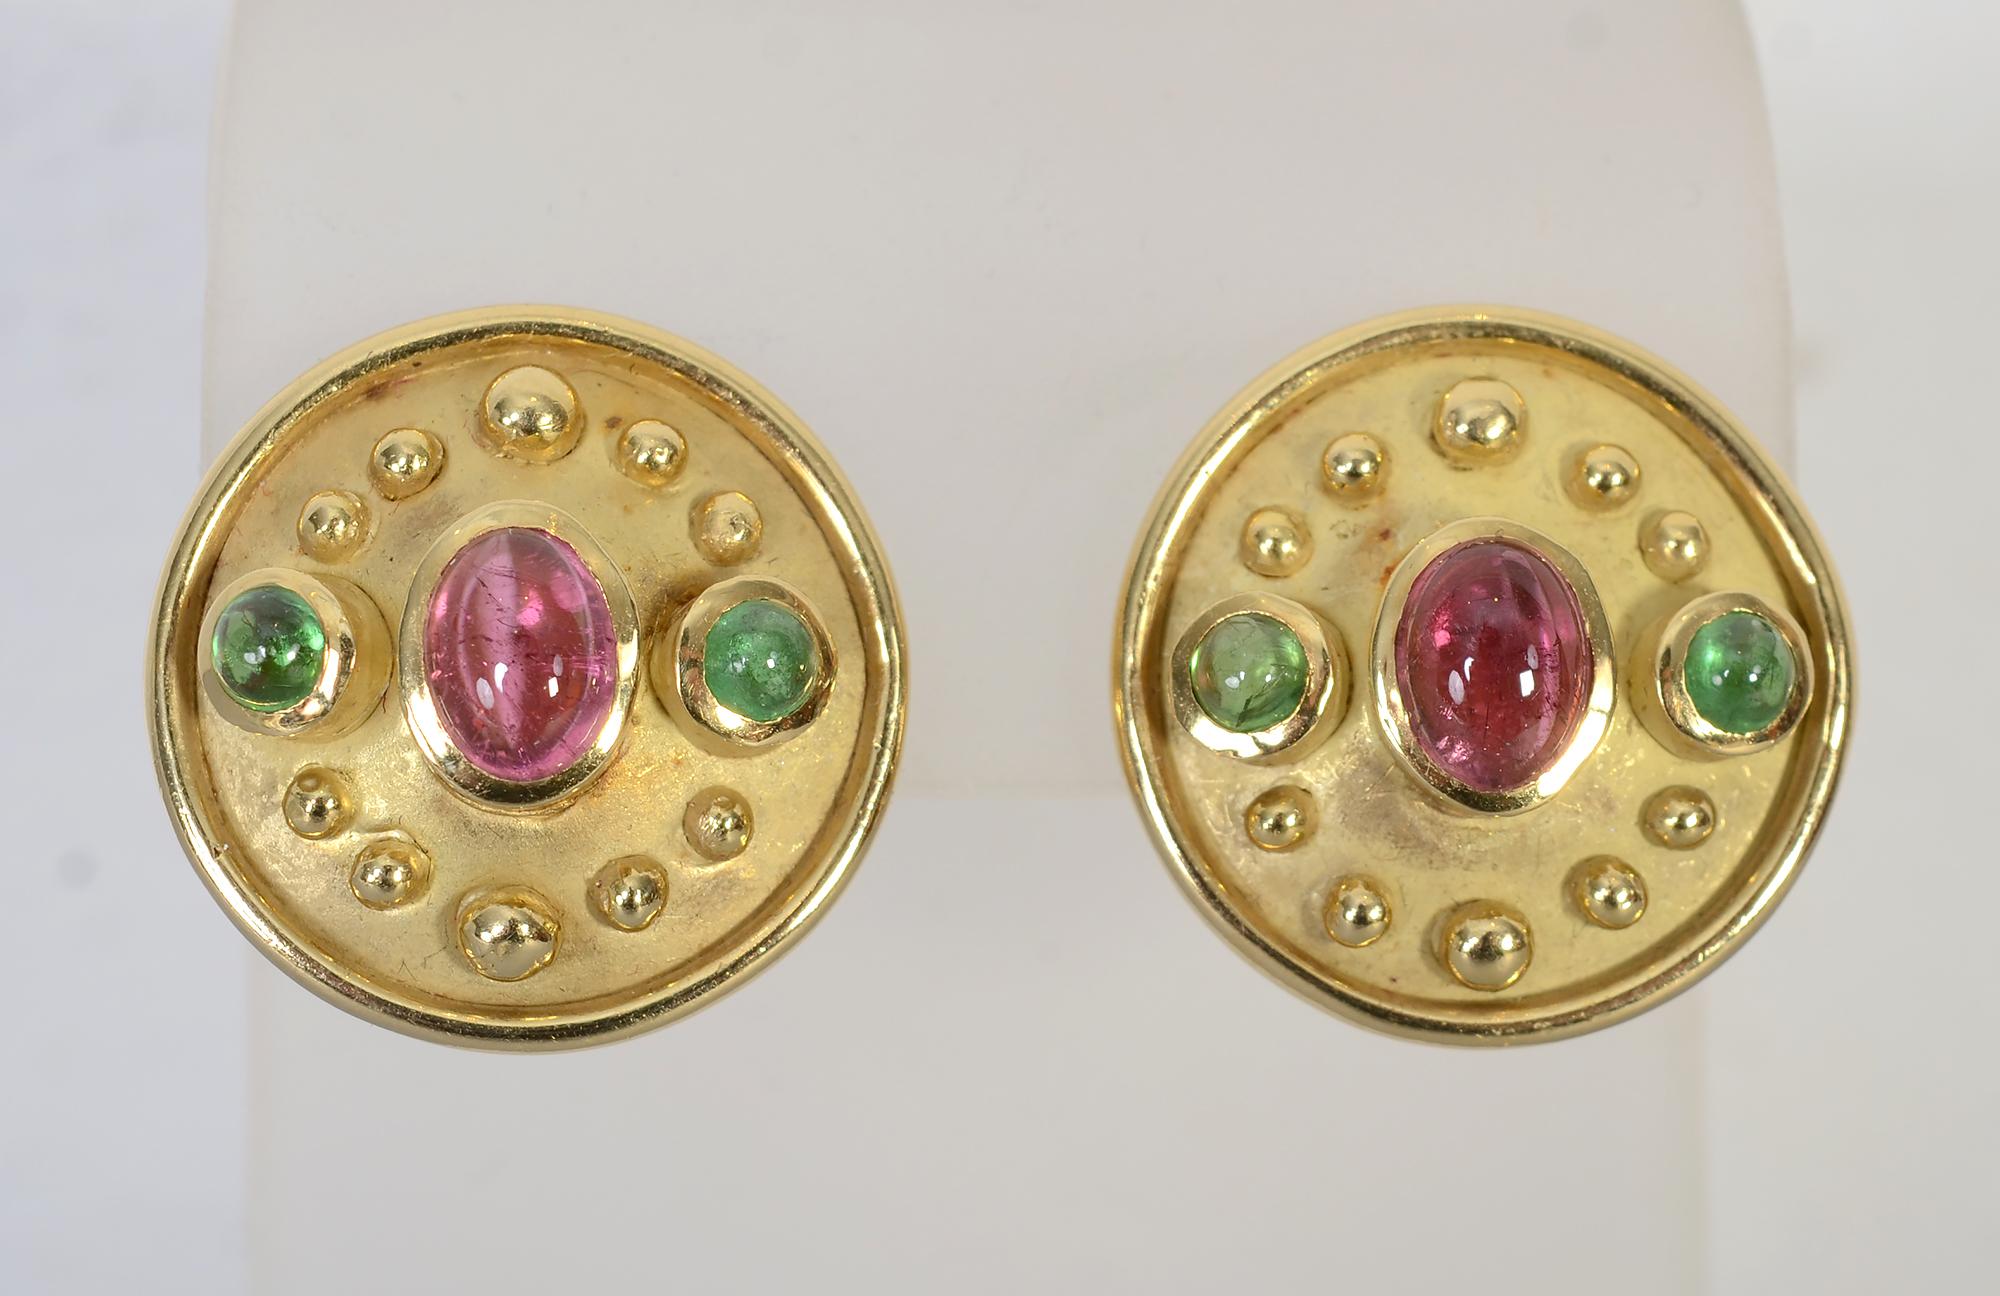 Boucles d'oreilles Denise Roberge en or 18 carats avec tourmalines roses et vertes. La pierre ovale centrale est d'environ 0,5 carat et les pierres rondes vertes sont d'environ 0,25 carat chacune. Des perles d'or font le tour de la pièce et une